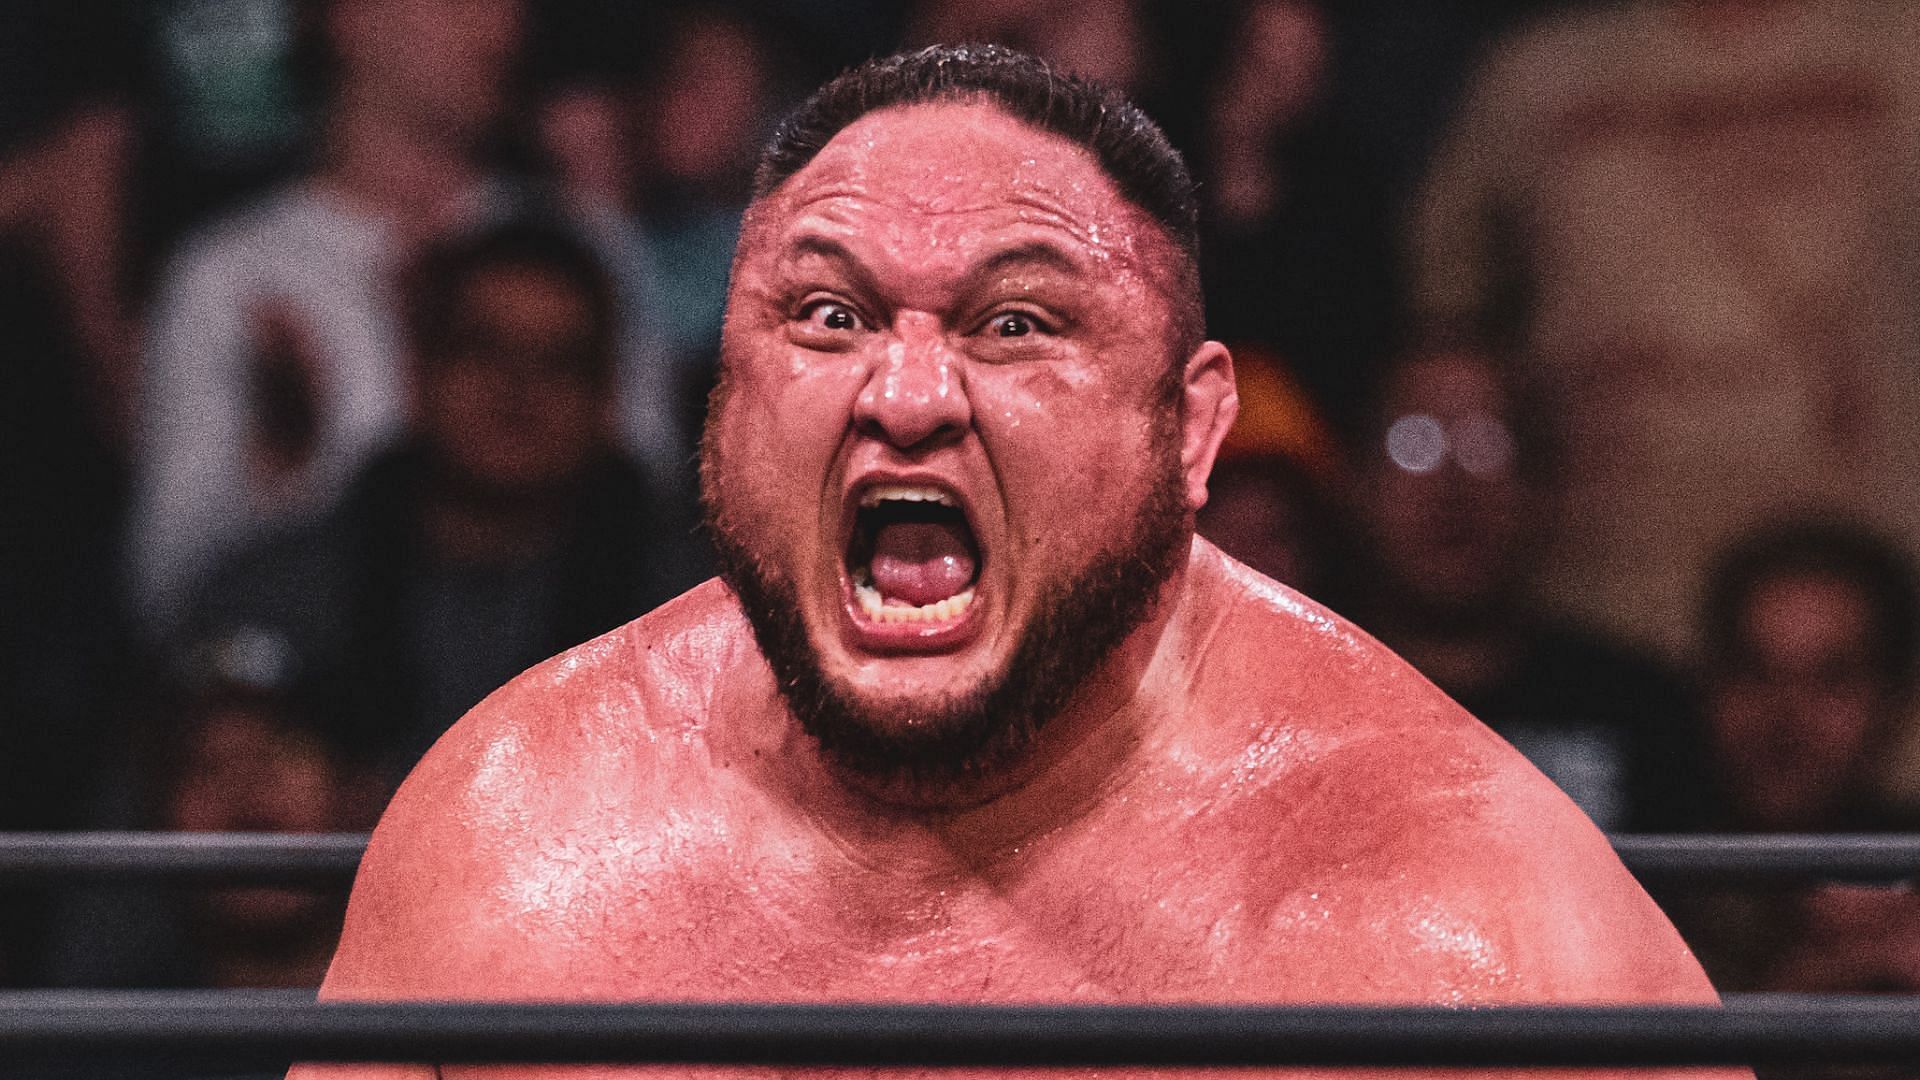 Samoa Joe is a former WWE US Champion